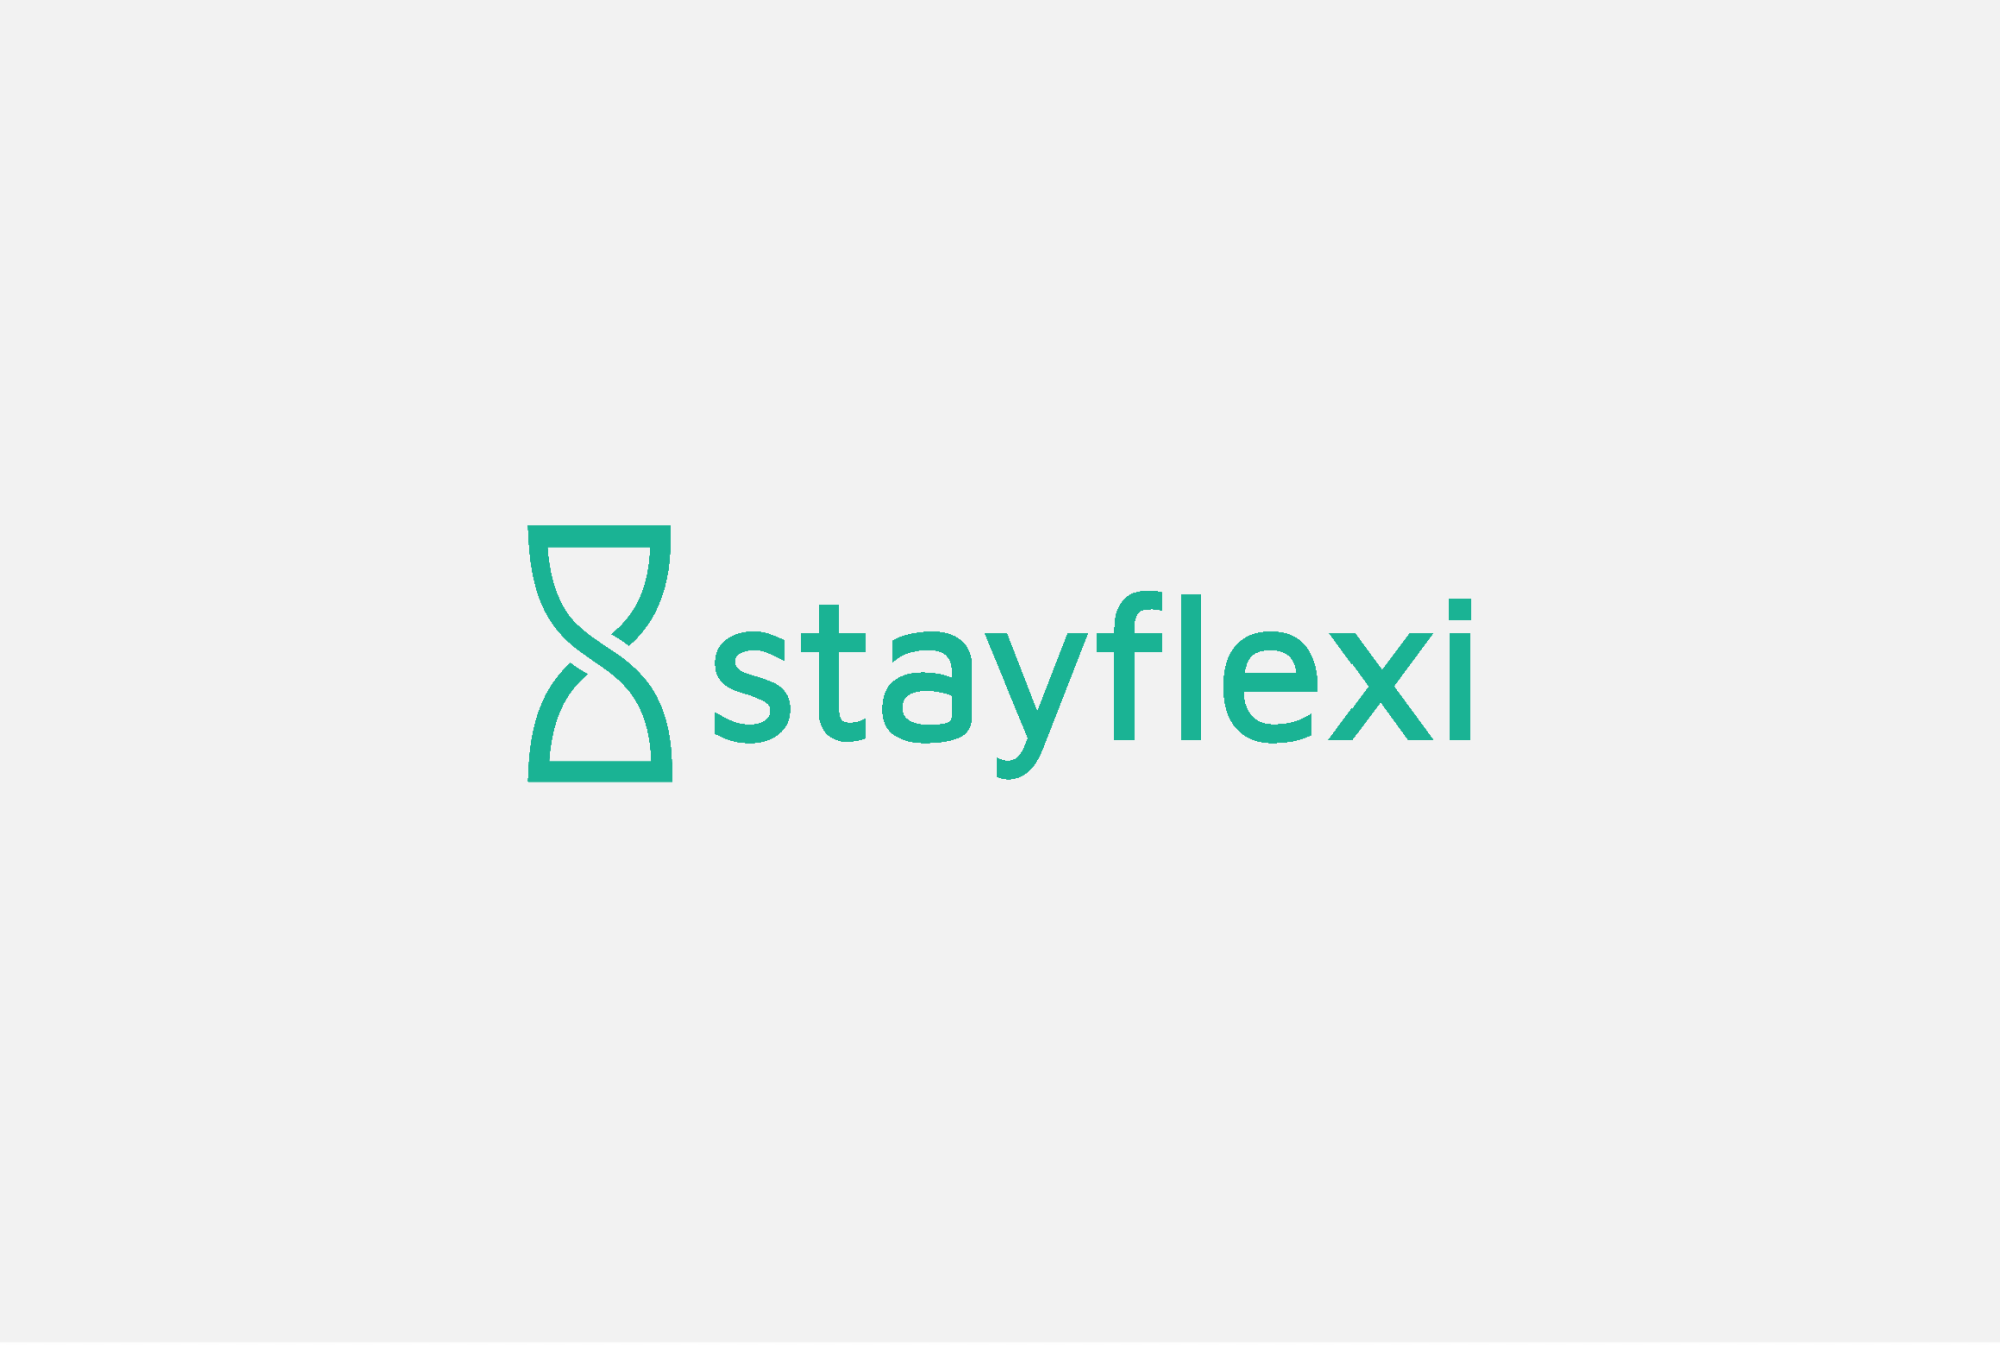 stayflexi Image